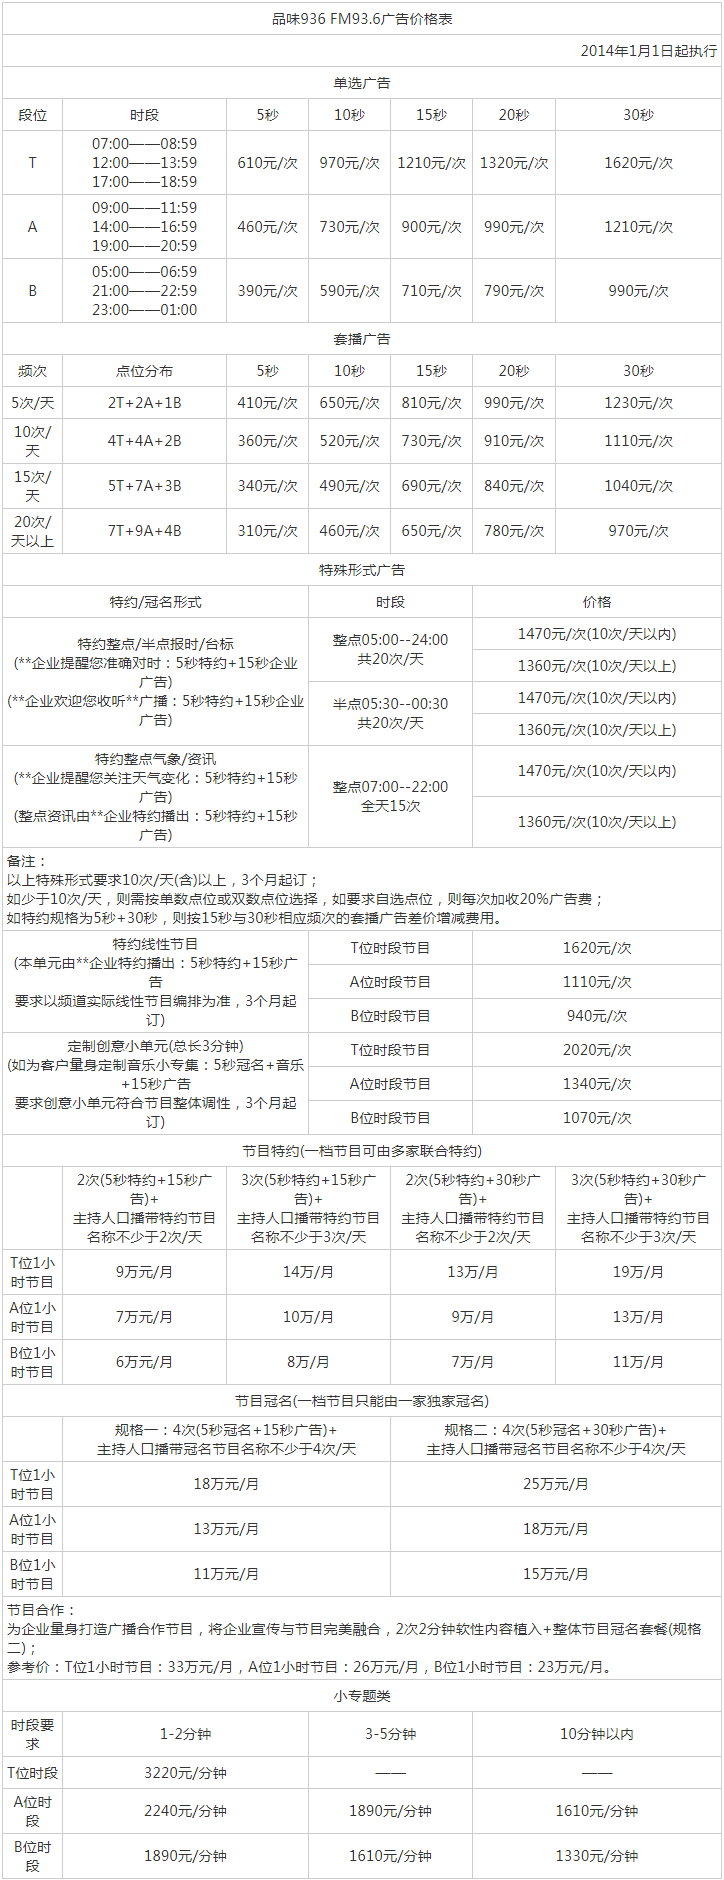 2014武汉人民广播电台少儿频道 FM93.6广告报价表.png